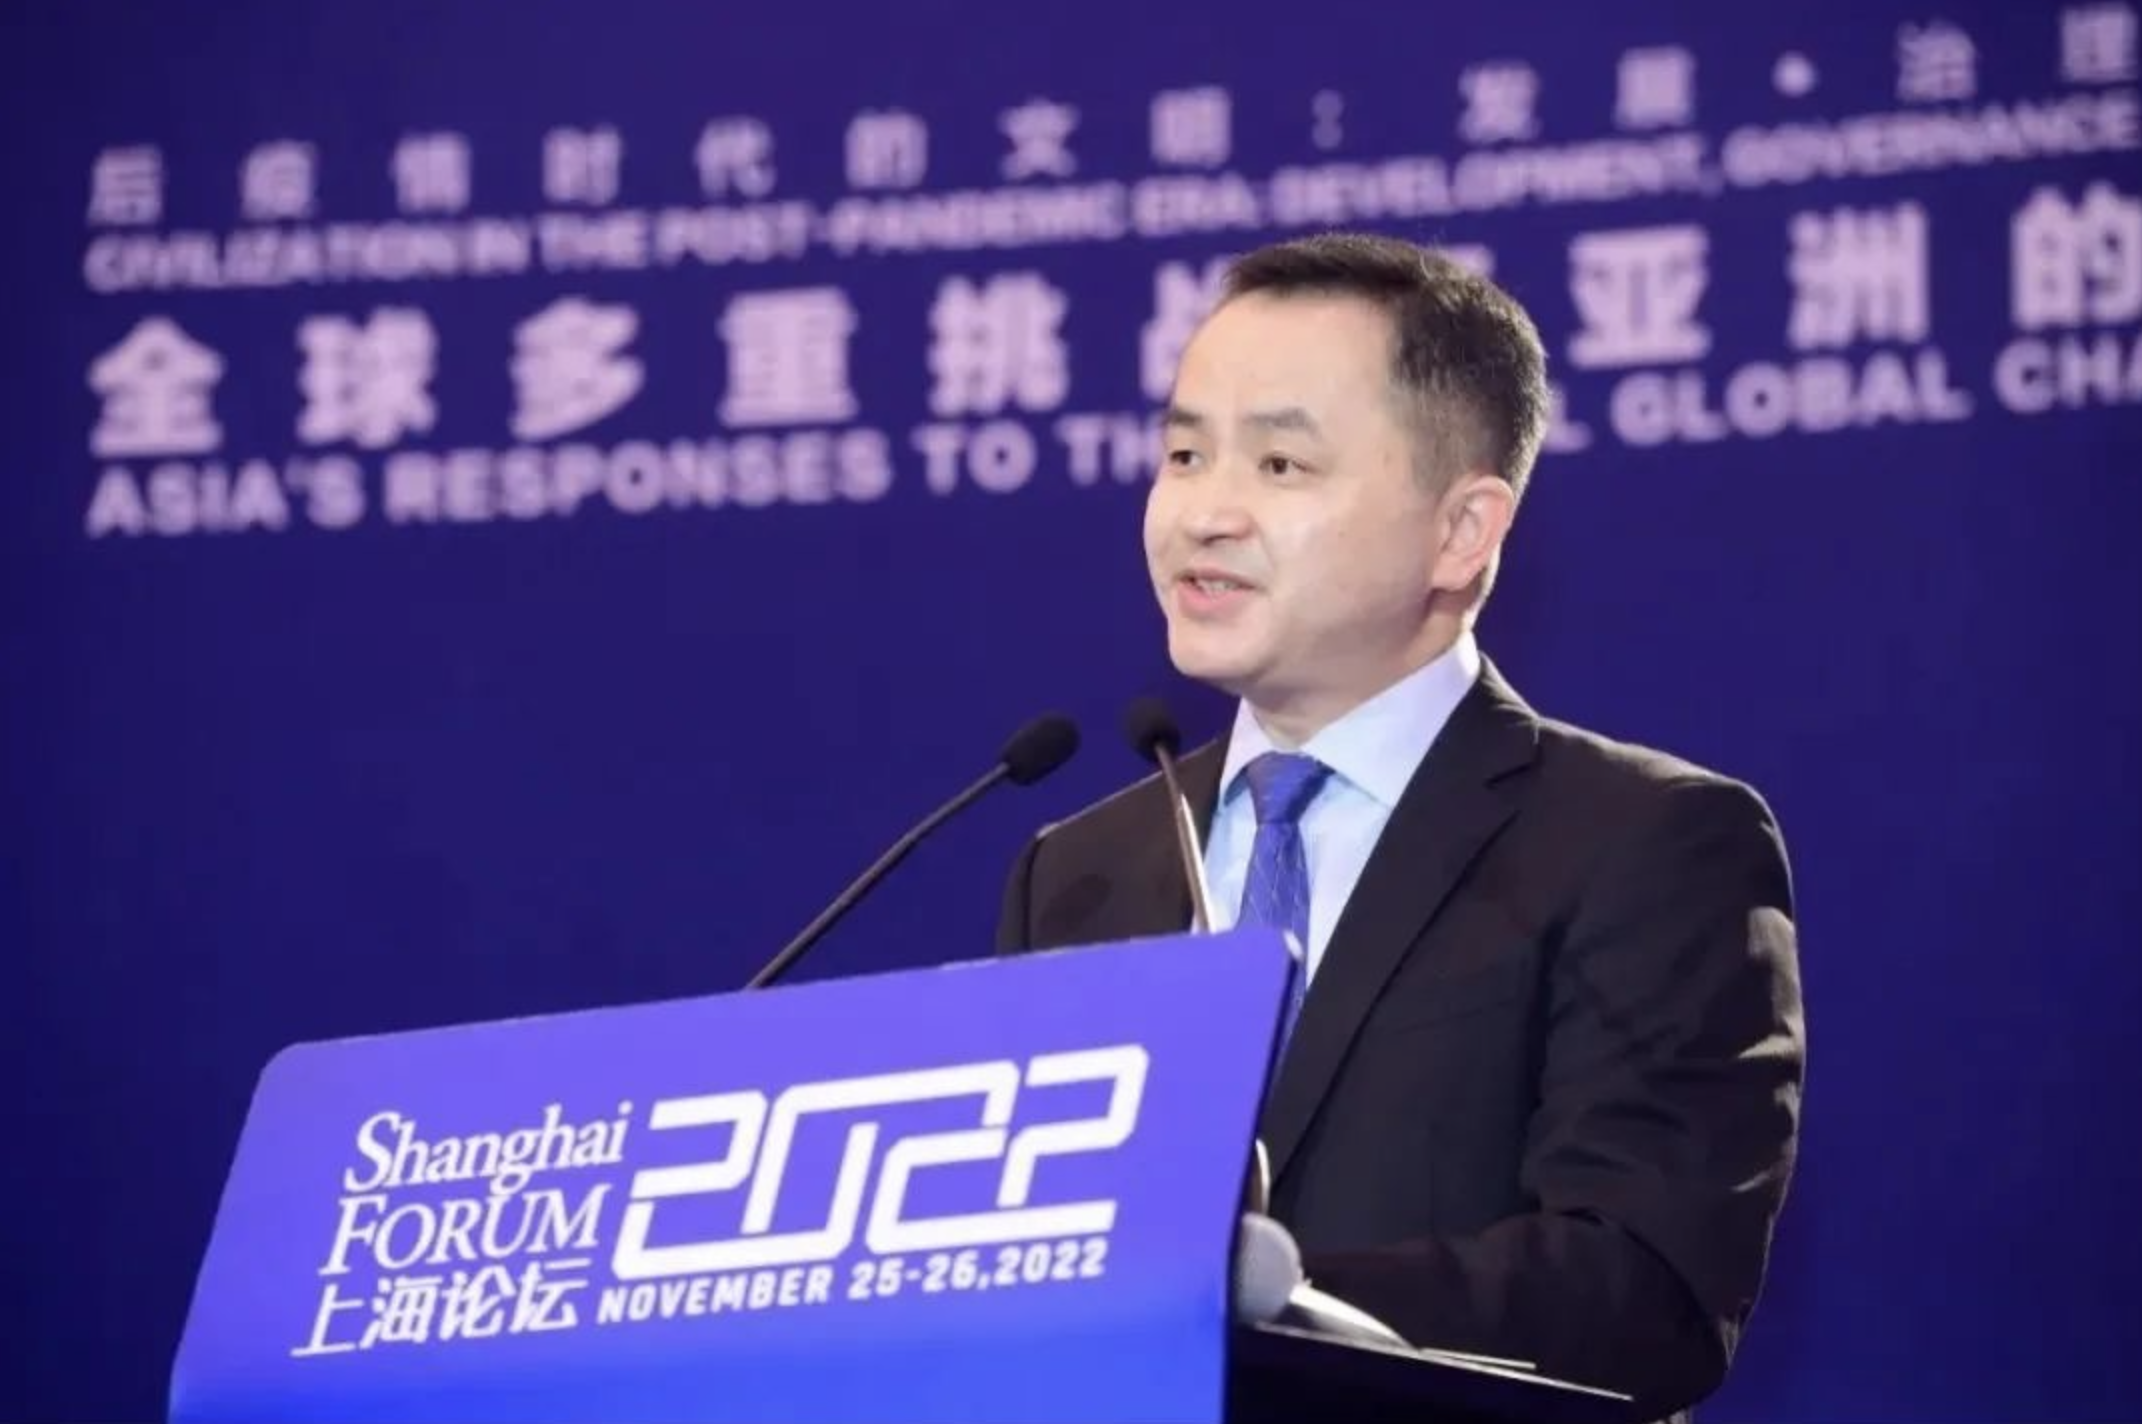 Shanghai Forum 2022：Zheng Yu